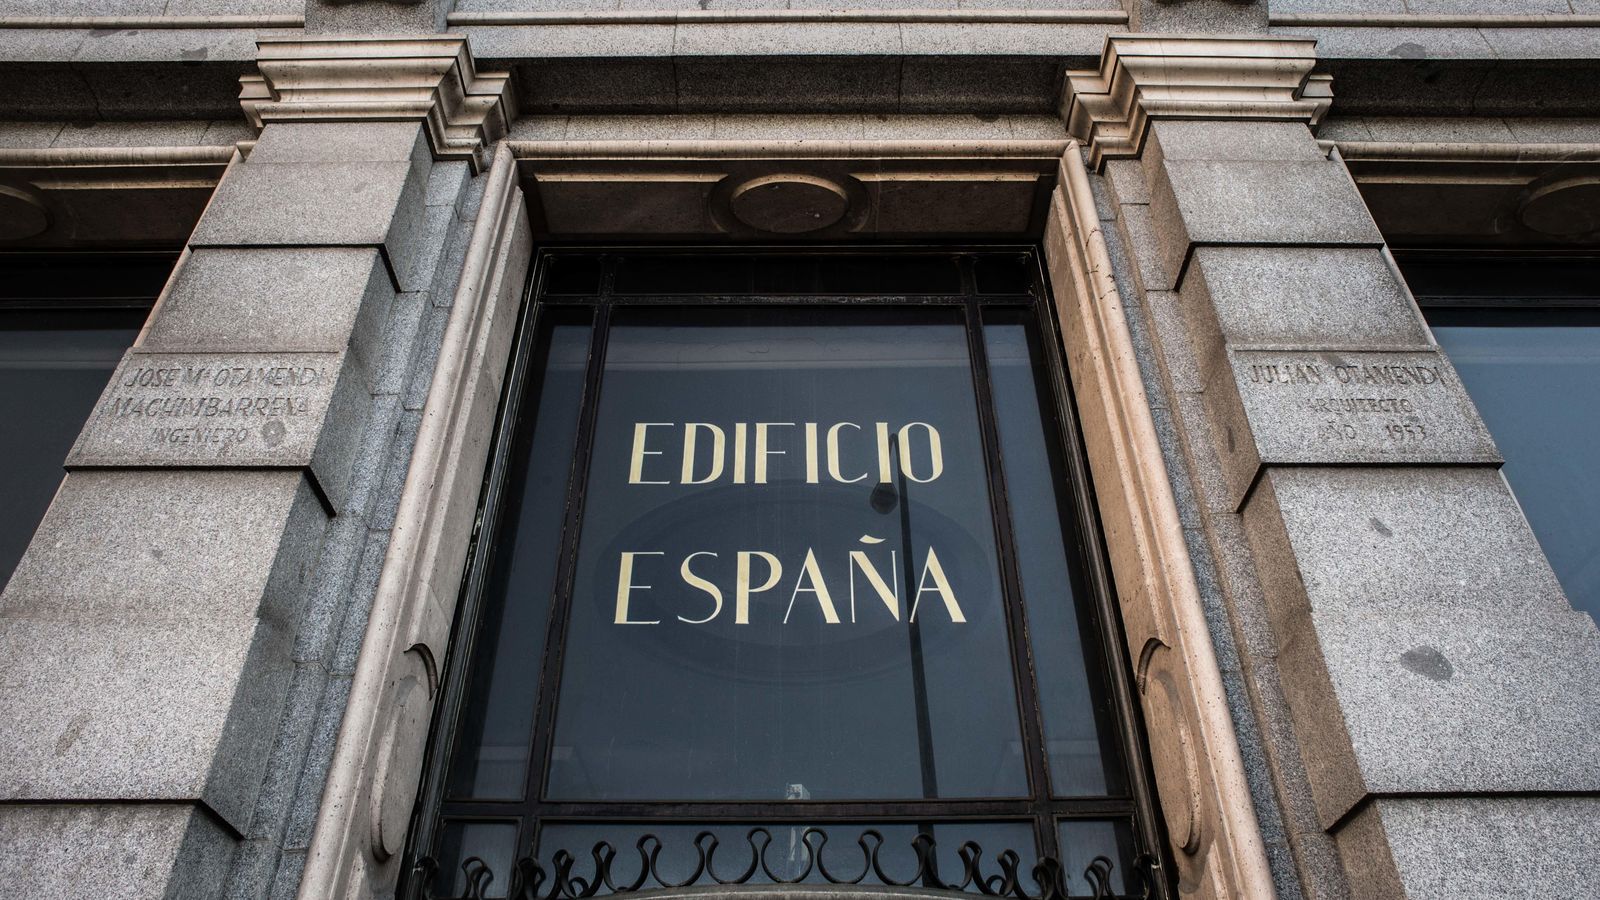 Foto: Trinitario Casanova prevé respetar la fachada del Edificio España.